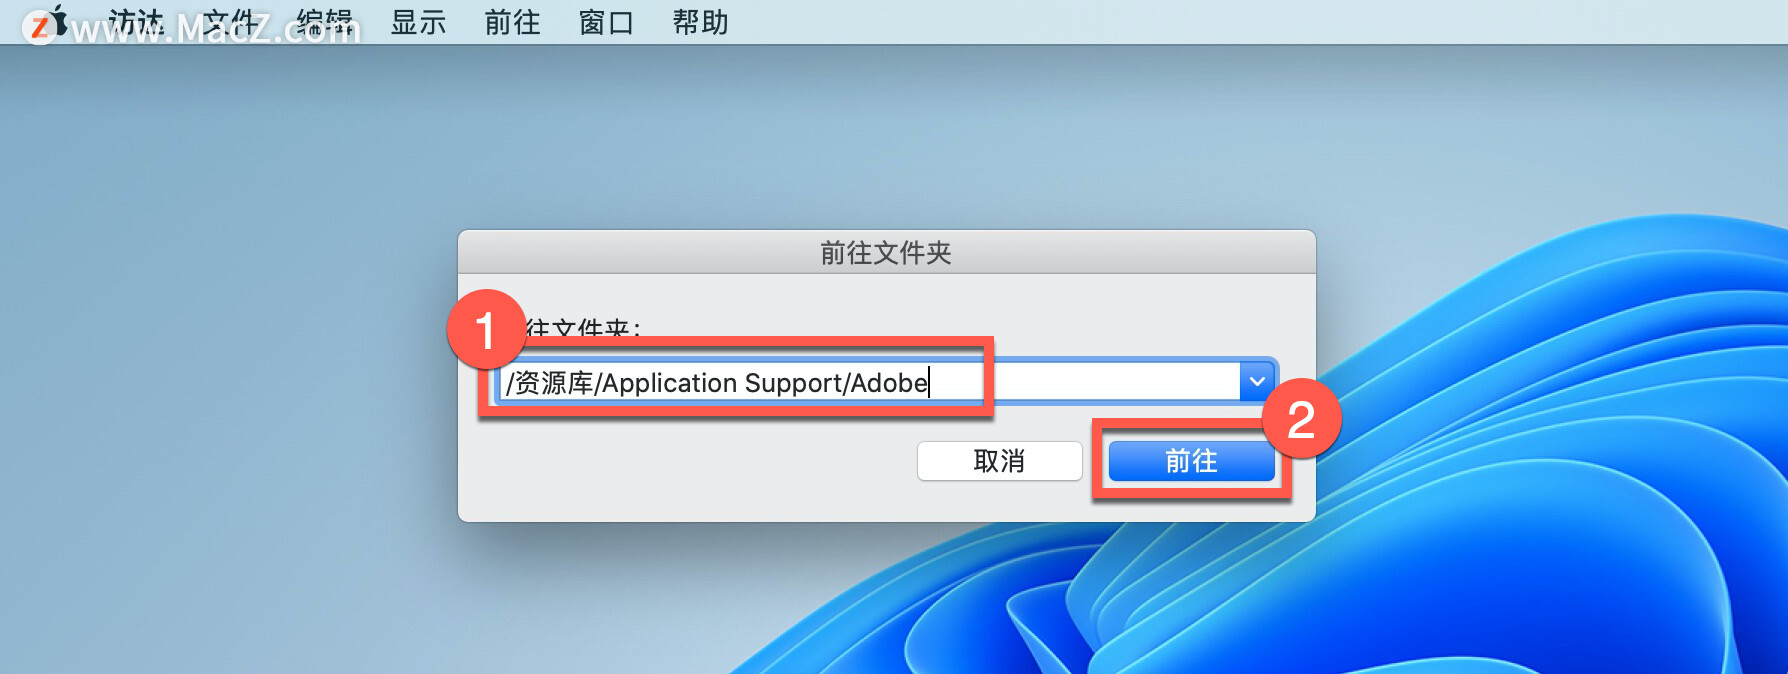 如何解决苹果Mac电脑安装PS失败并出现错误代码131？